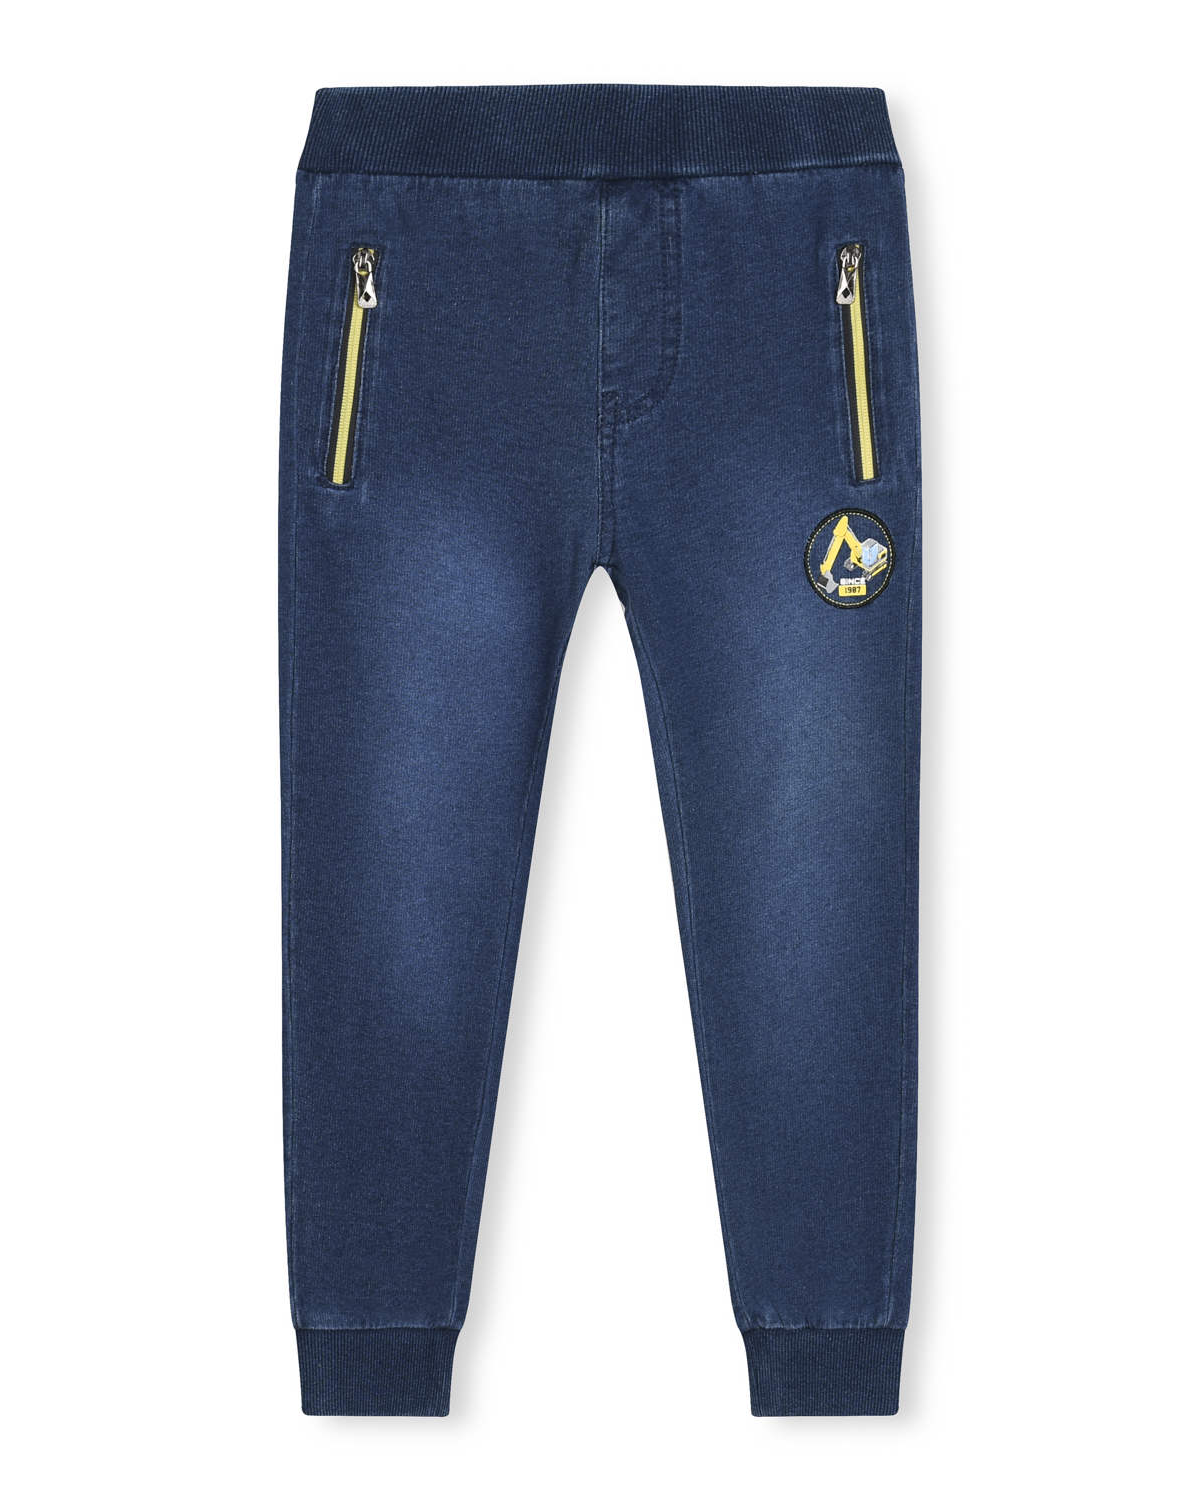 Chlapecké riflové kalhoty / tepláky - KUGO TM8259K, tmavší modrá / žluté zipy Barva: Modrá, Velikost: 98